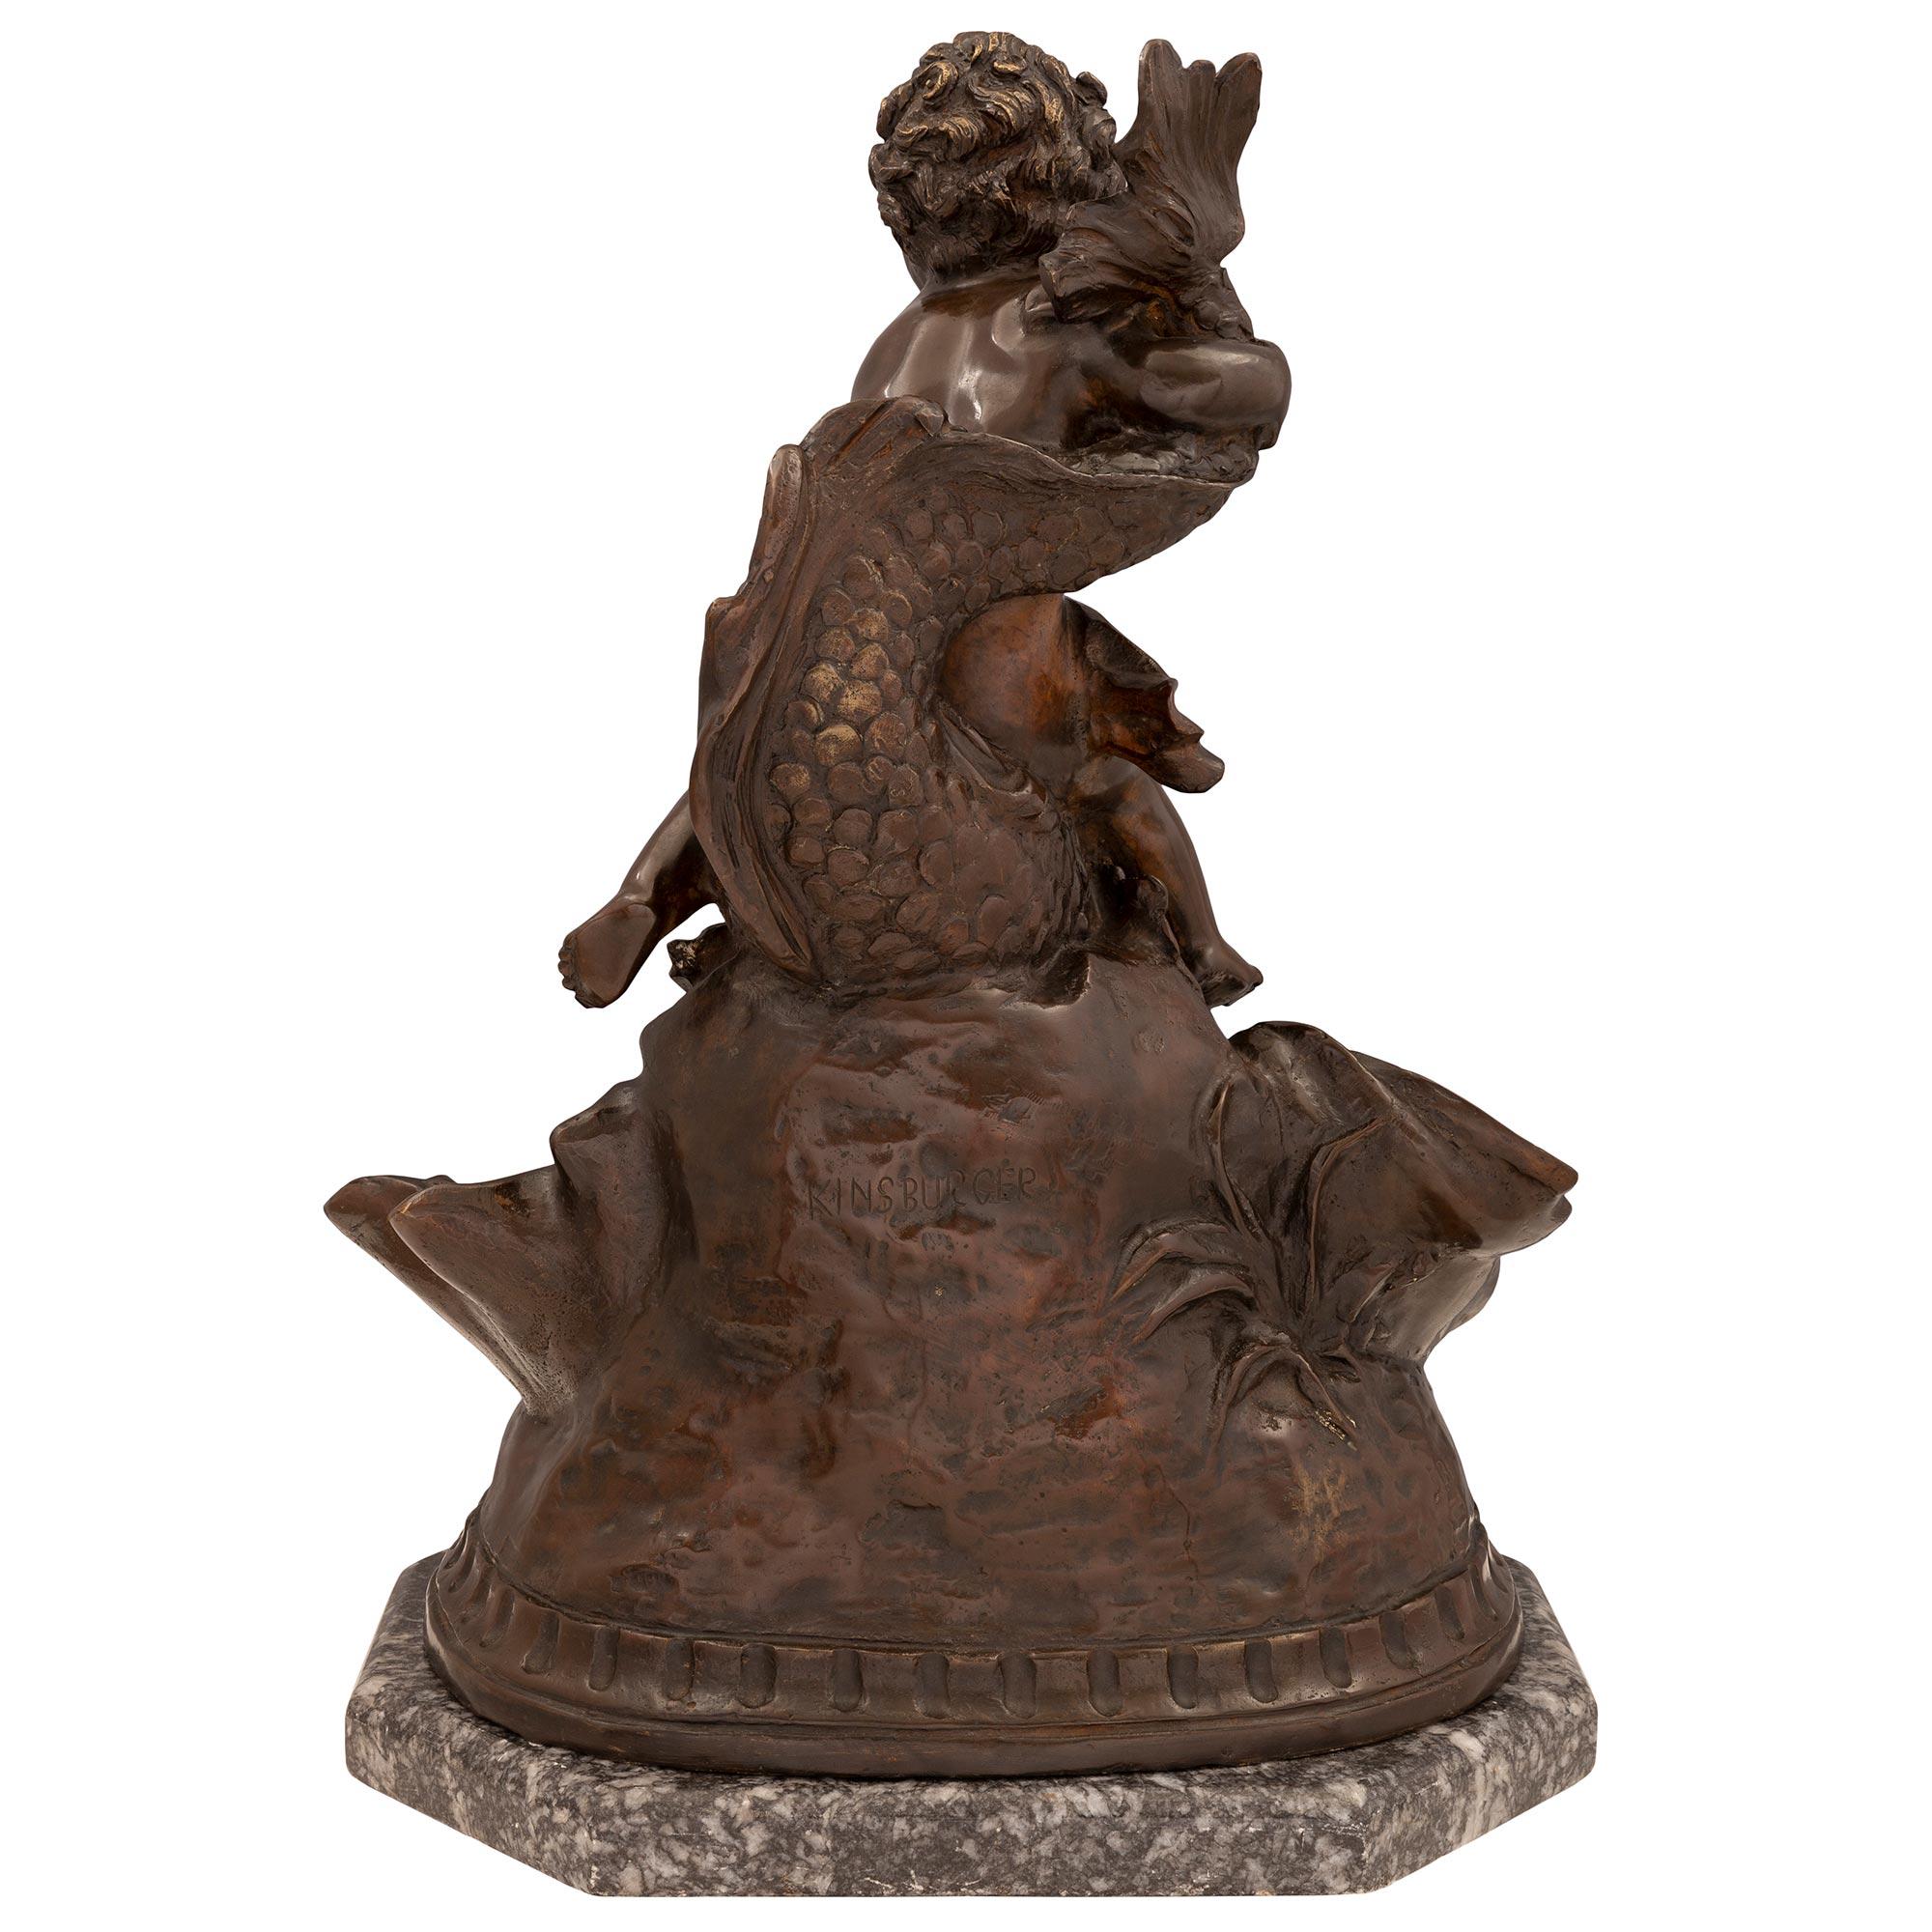 s kinsburger bronze sculpture